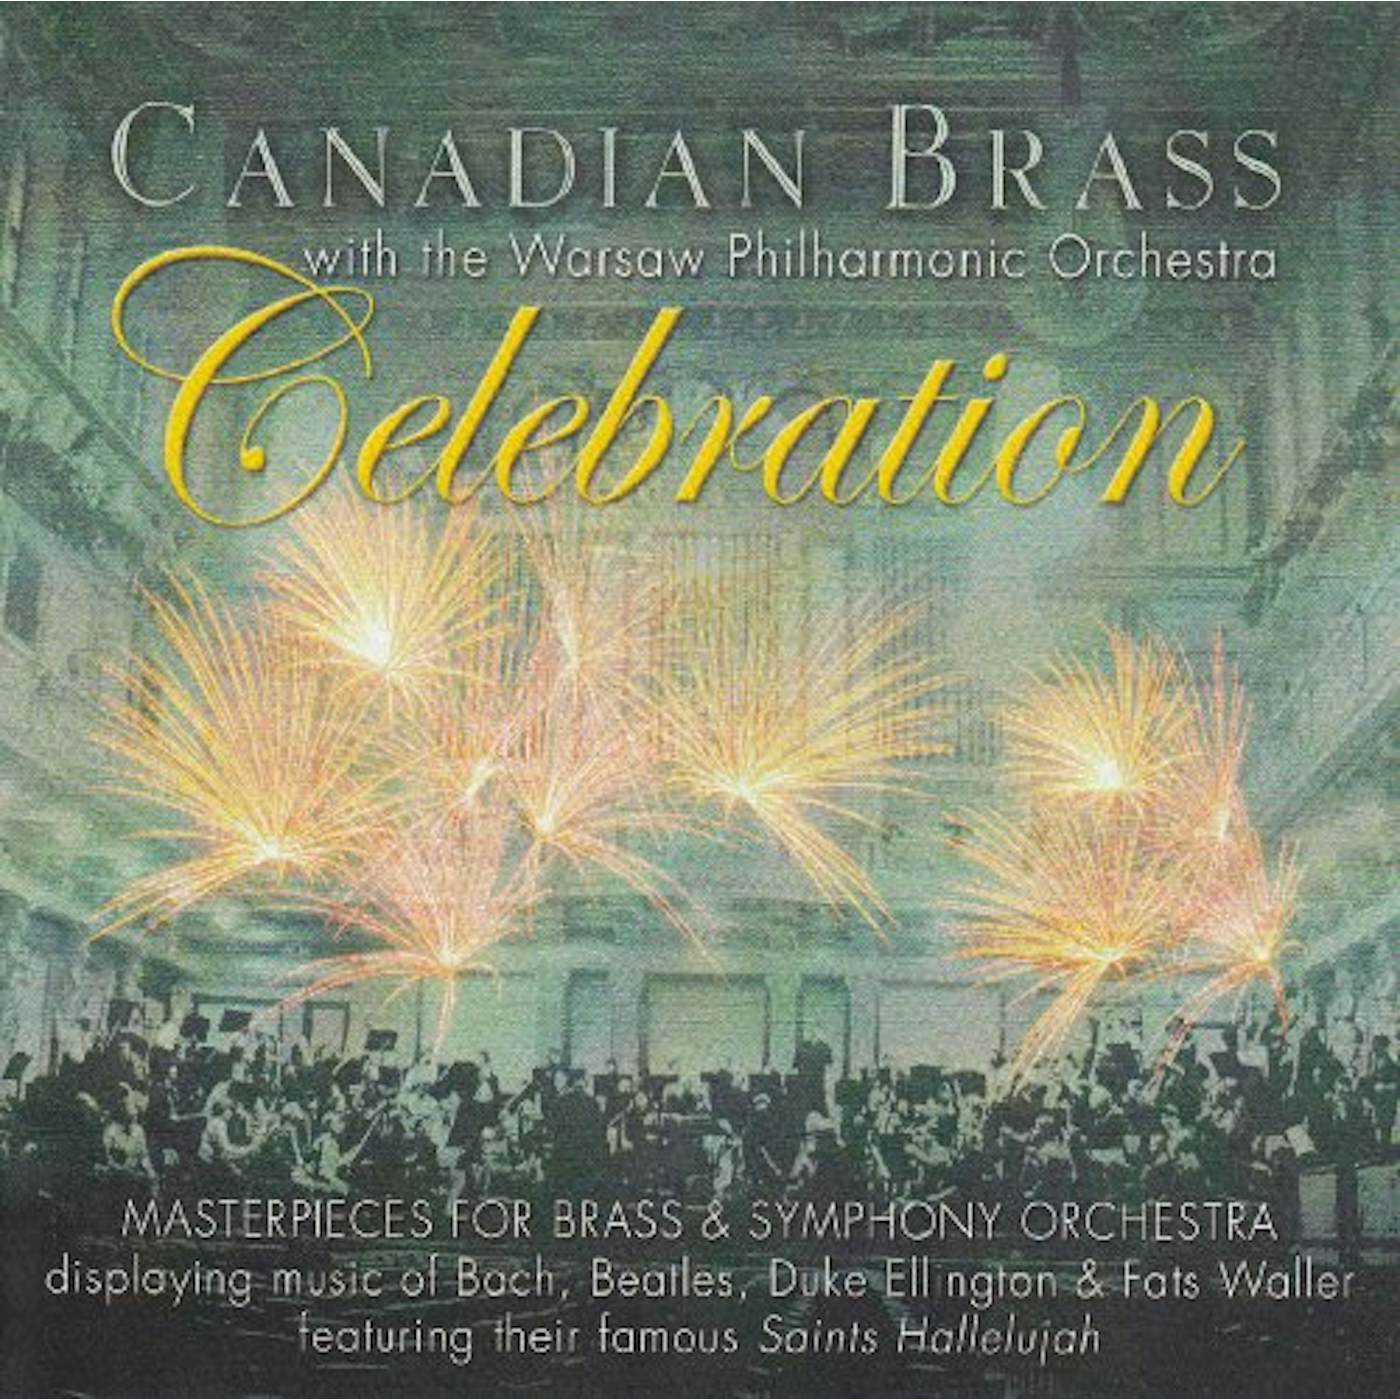 Canadian Brass CELEBRATION CD